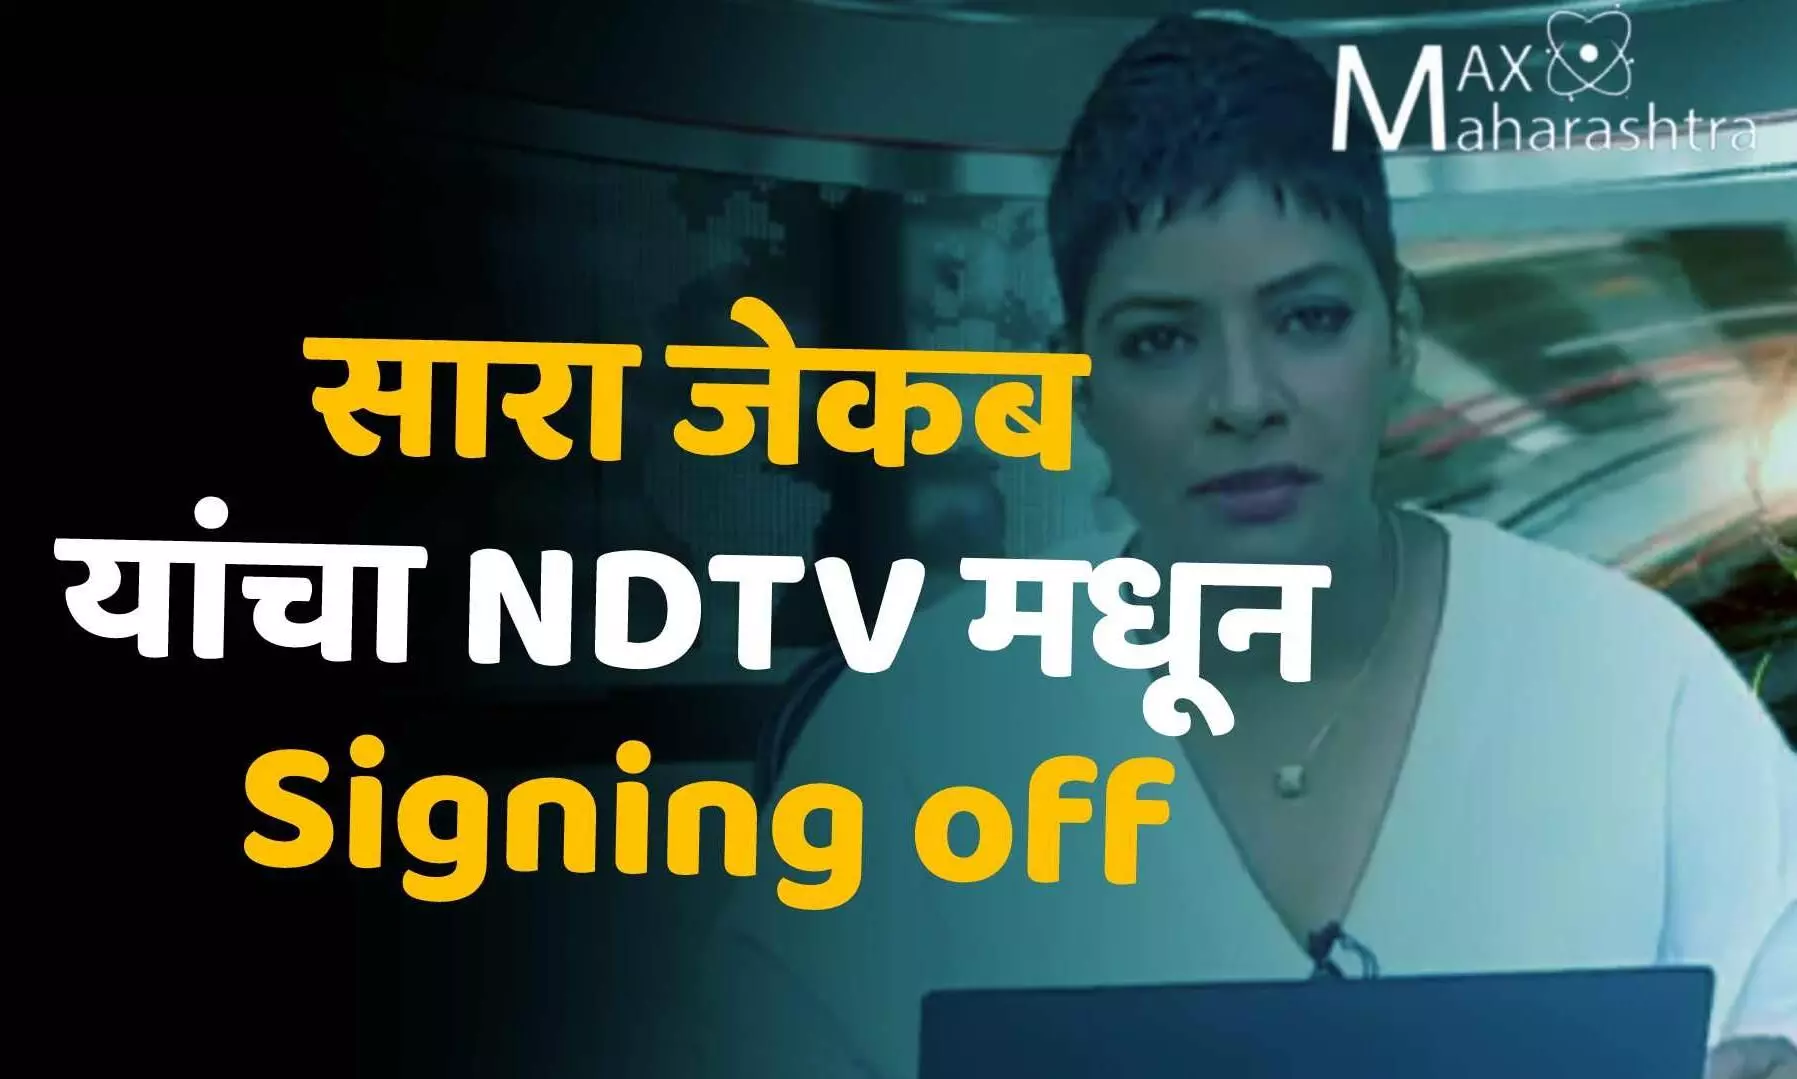 सारा जेकब यांचा NDTV मधून Signing off, 20 वर्षाचा प्रवास थांबवला